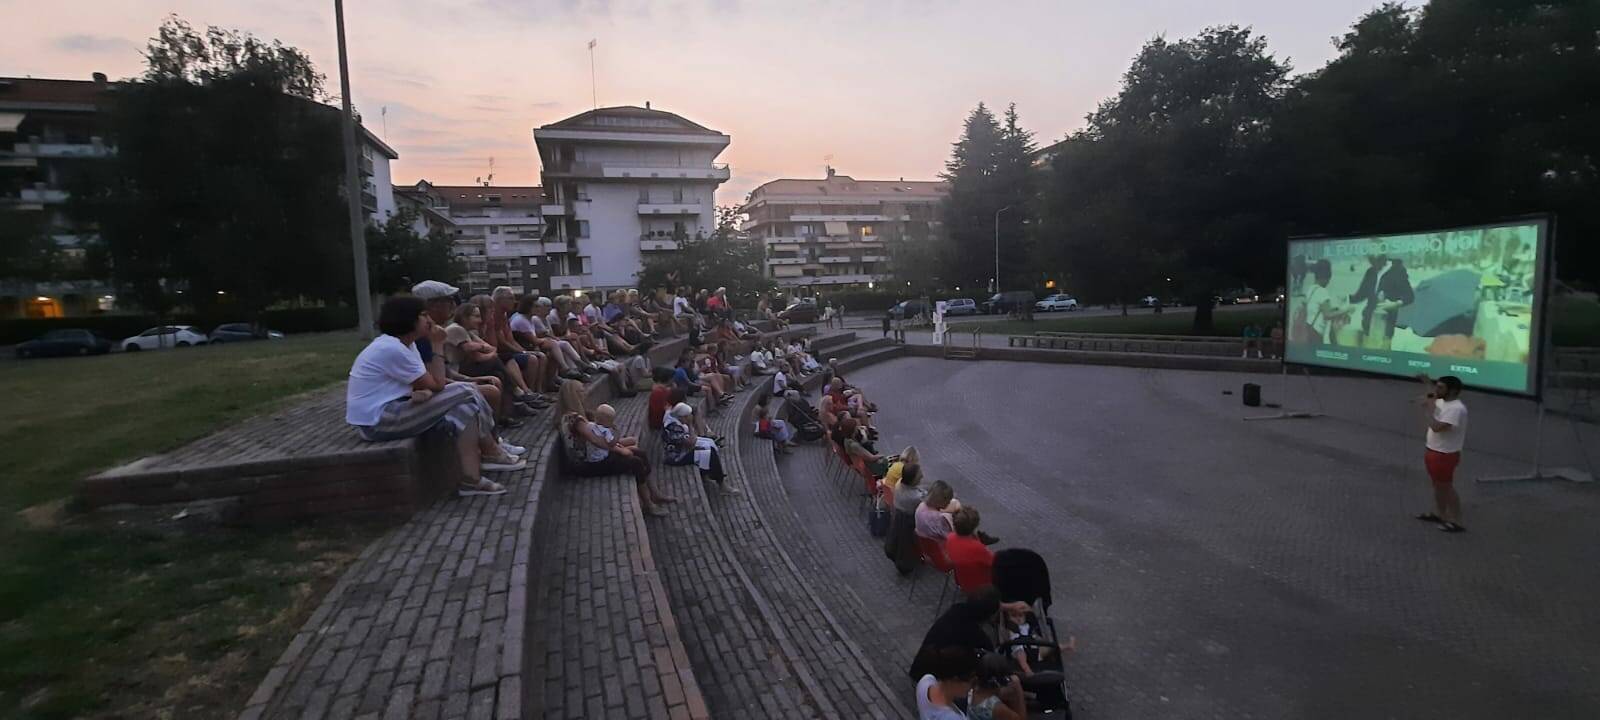 Cuneo, “Cinema e Musica sotto le stelle” si sposta nel quartiere San Paolo